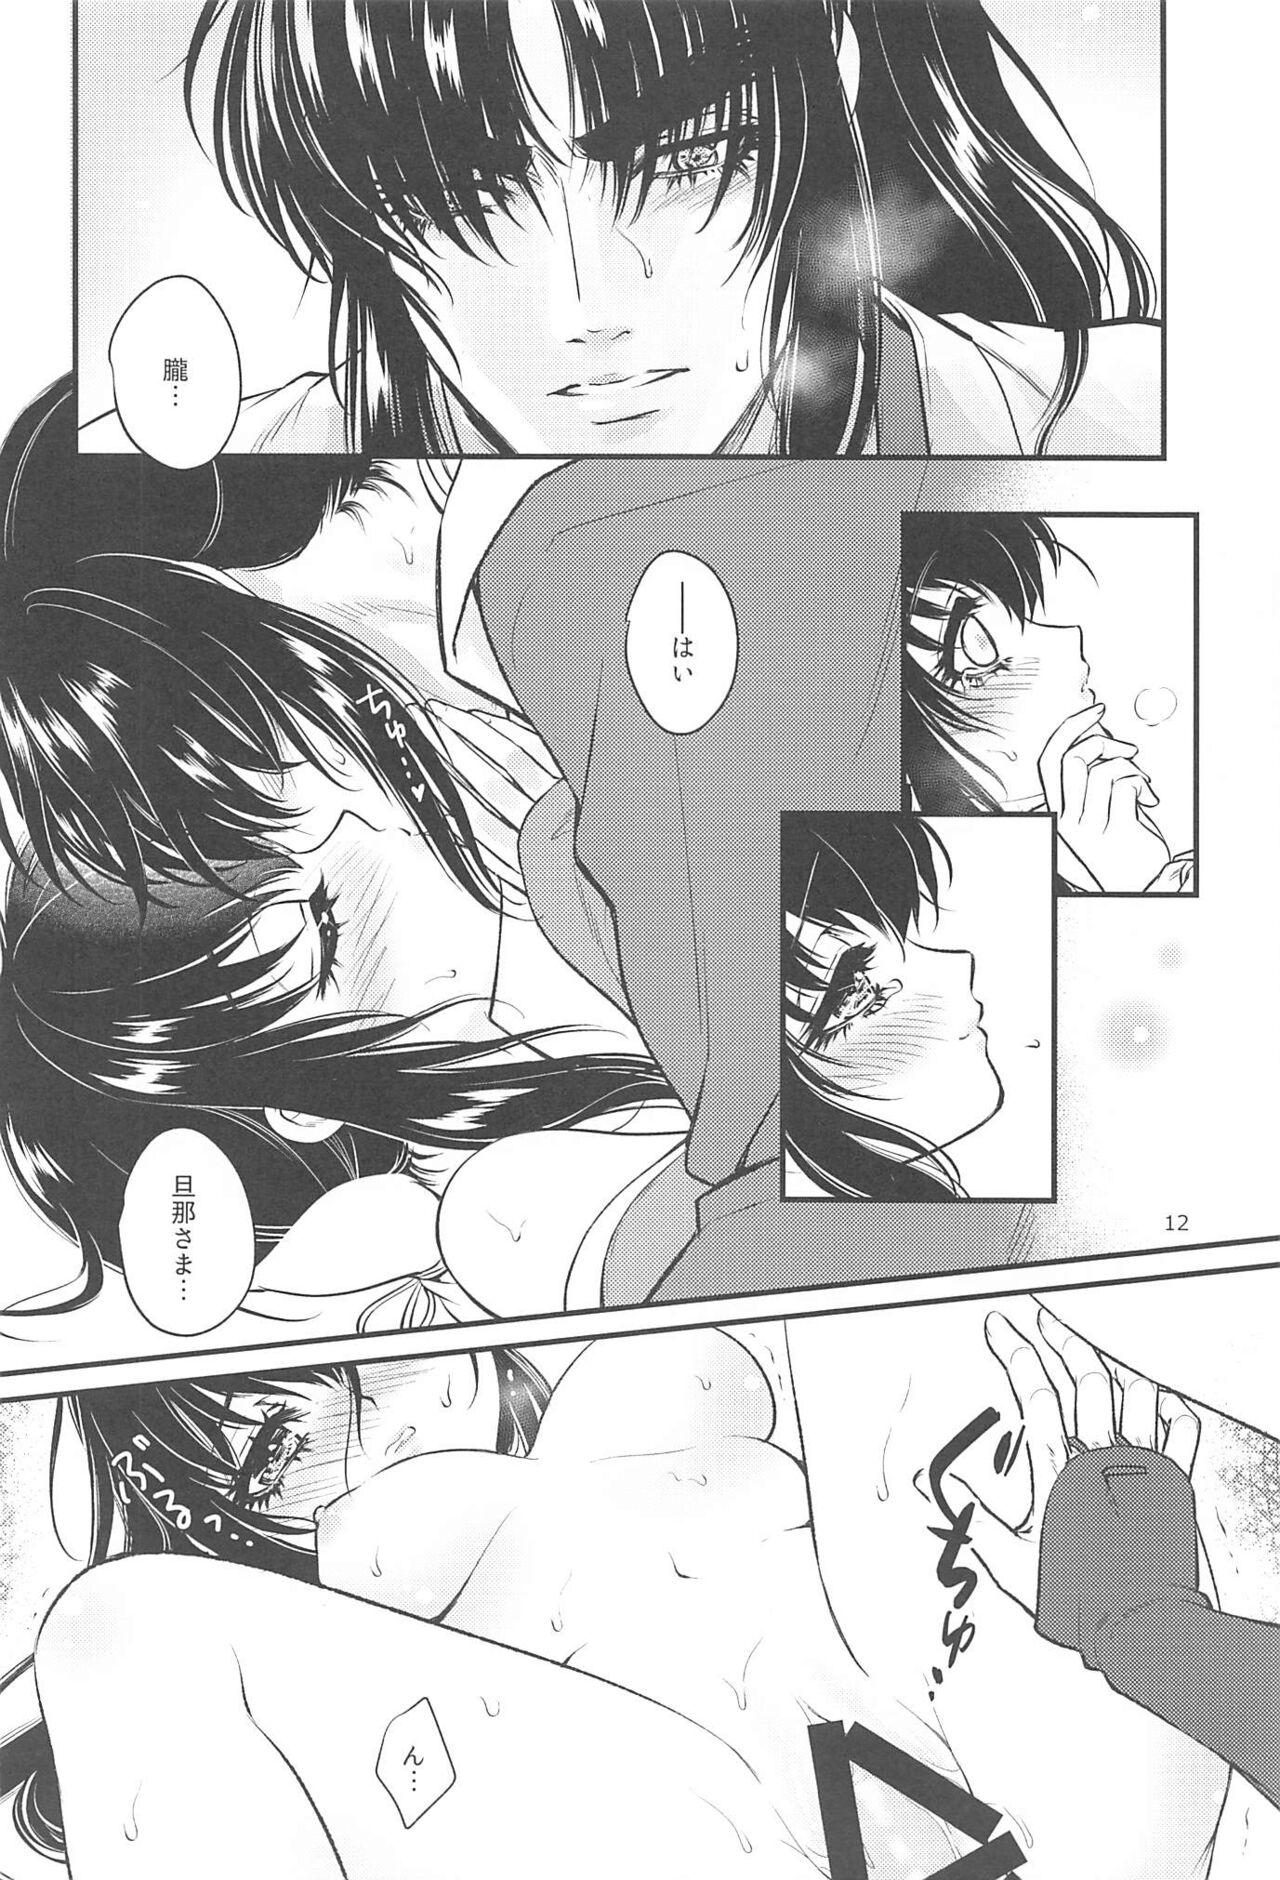 Groping Hatsukoi. - Basilisk Teen Blowjob - Page 11